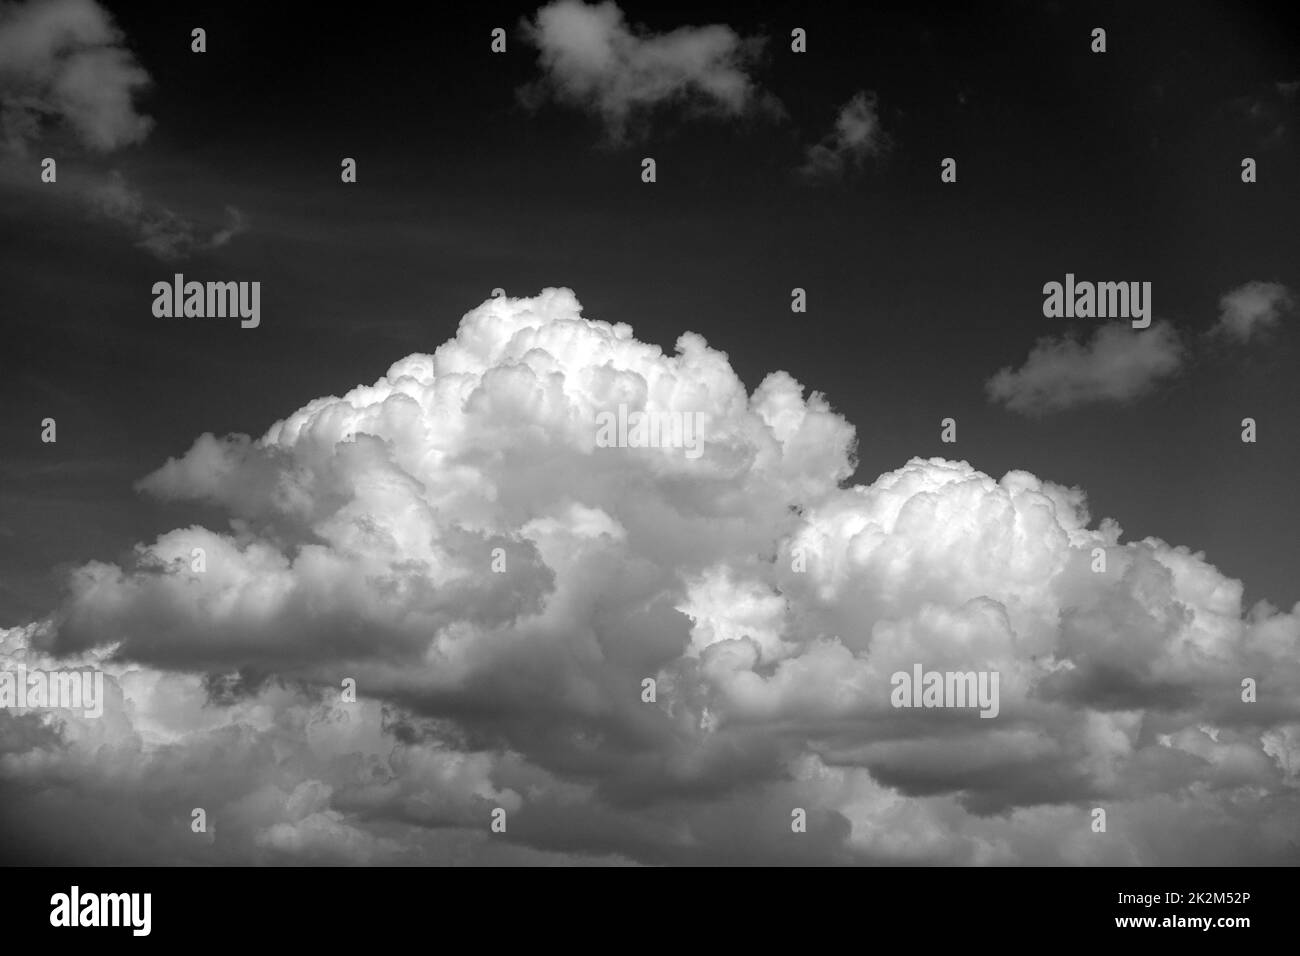 interessanti cluster di nuvole nel cielo, pesanti nuvole di pioggia, interessanti forme di nuvole, meravigliose nuvole bianche che sembrano cotone Foto Stock